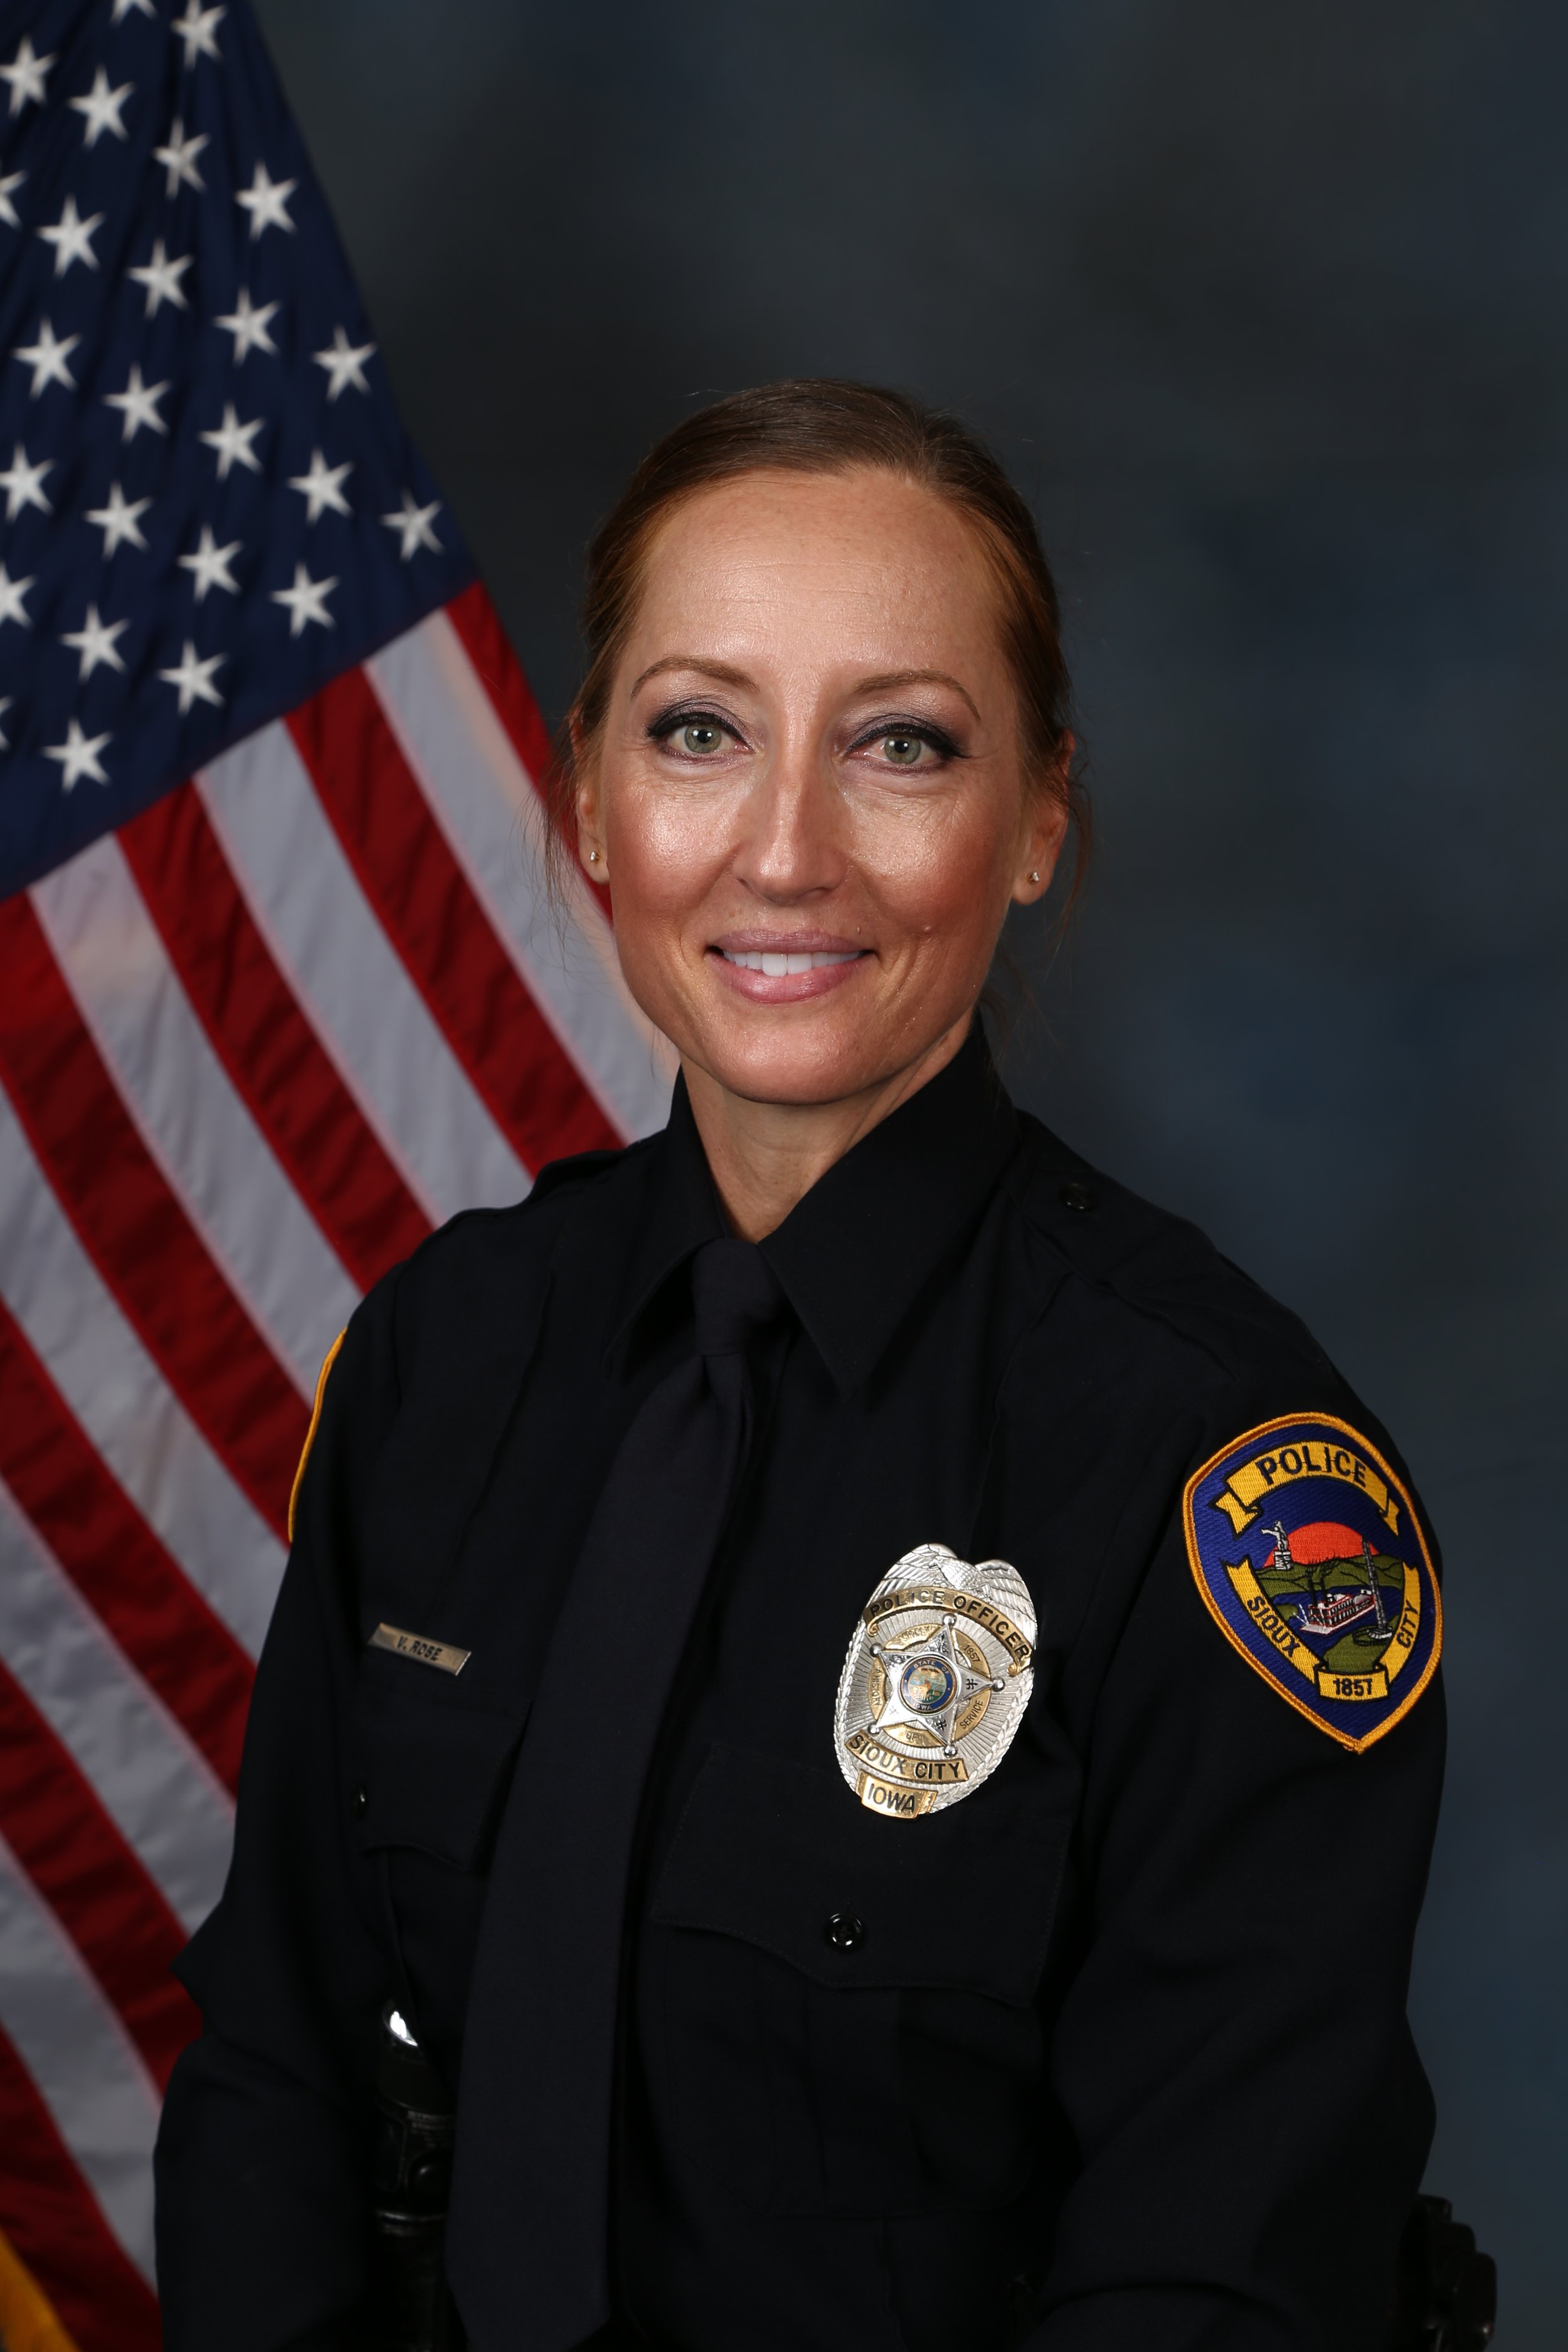 Officer Valerie Rose